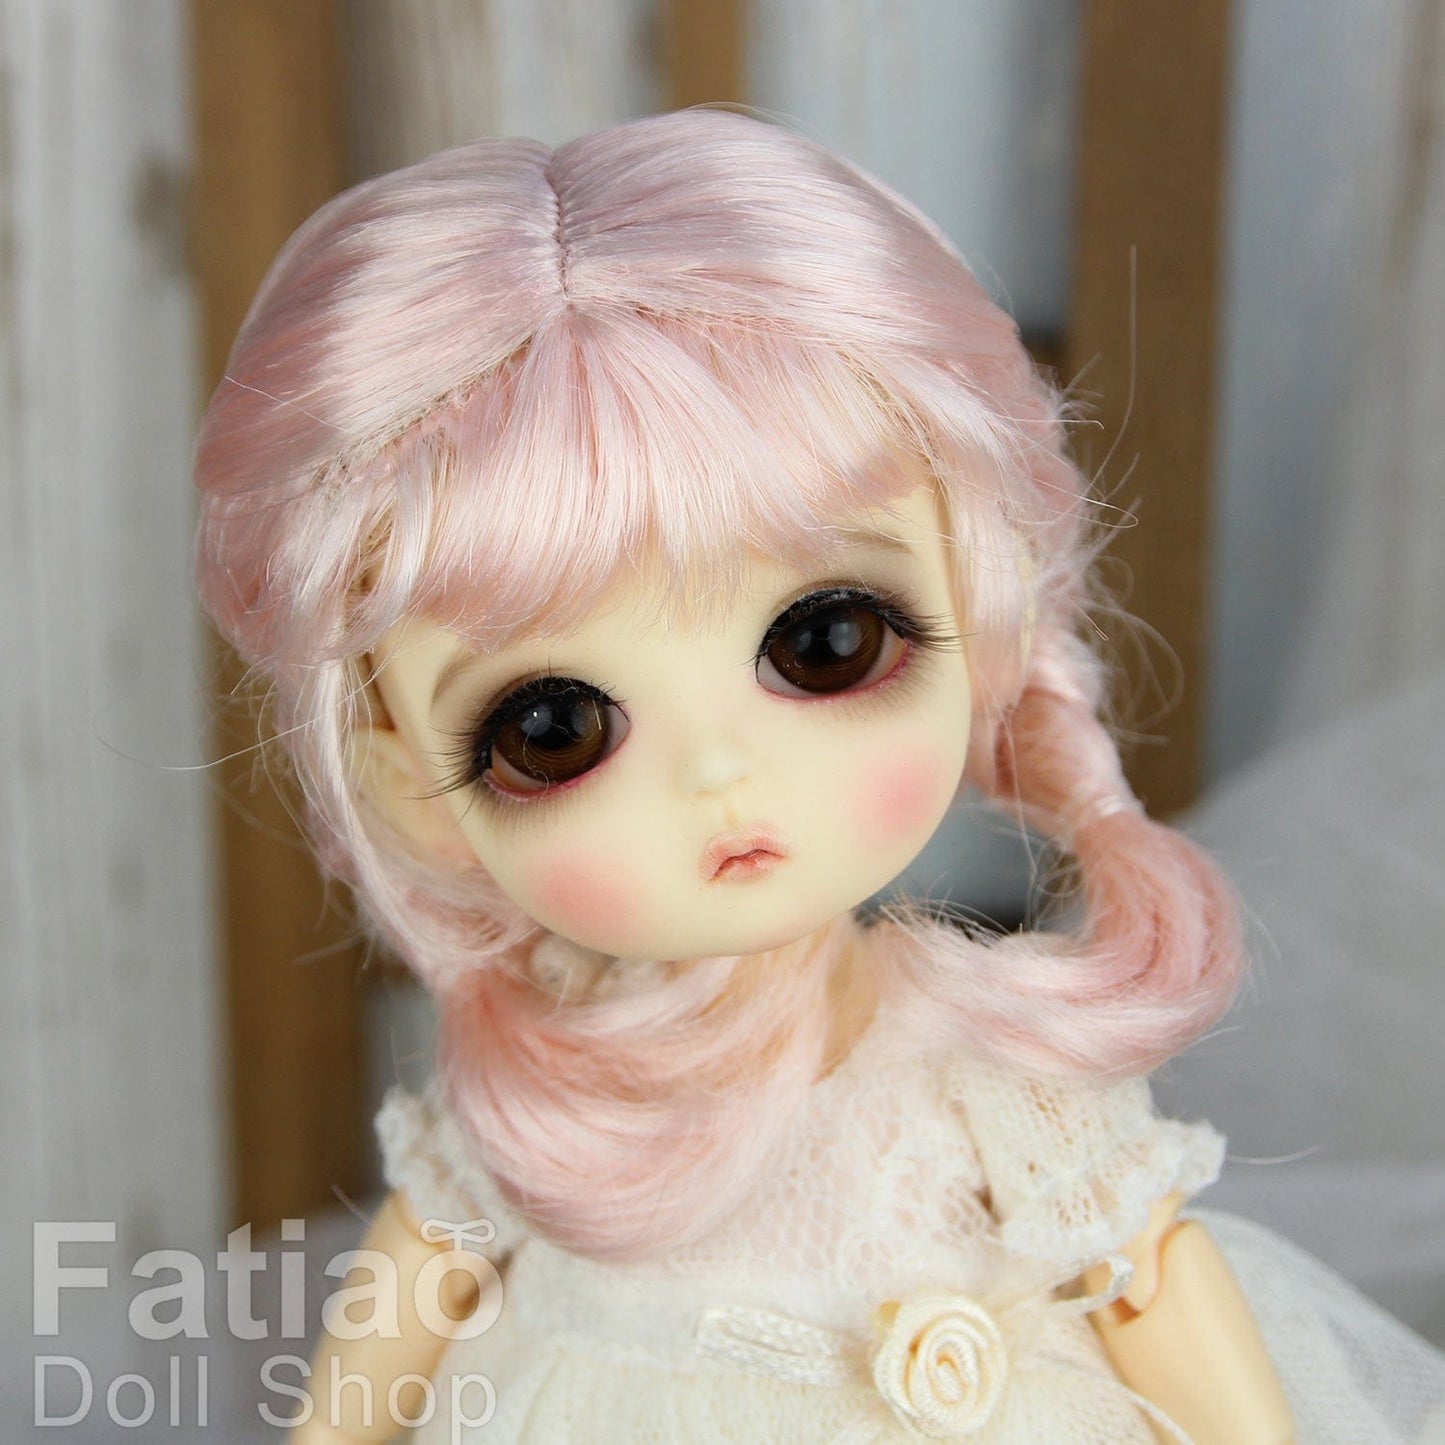 【Fatiao Doll Shop】FWF-656 娃用假髮 多色 / 5-6吋 BJD 8分